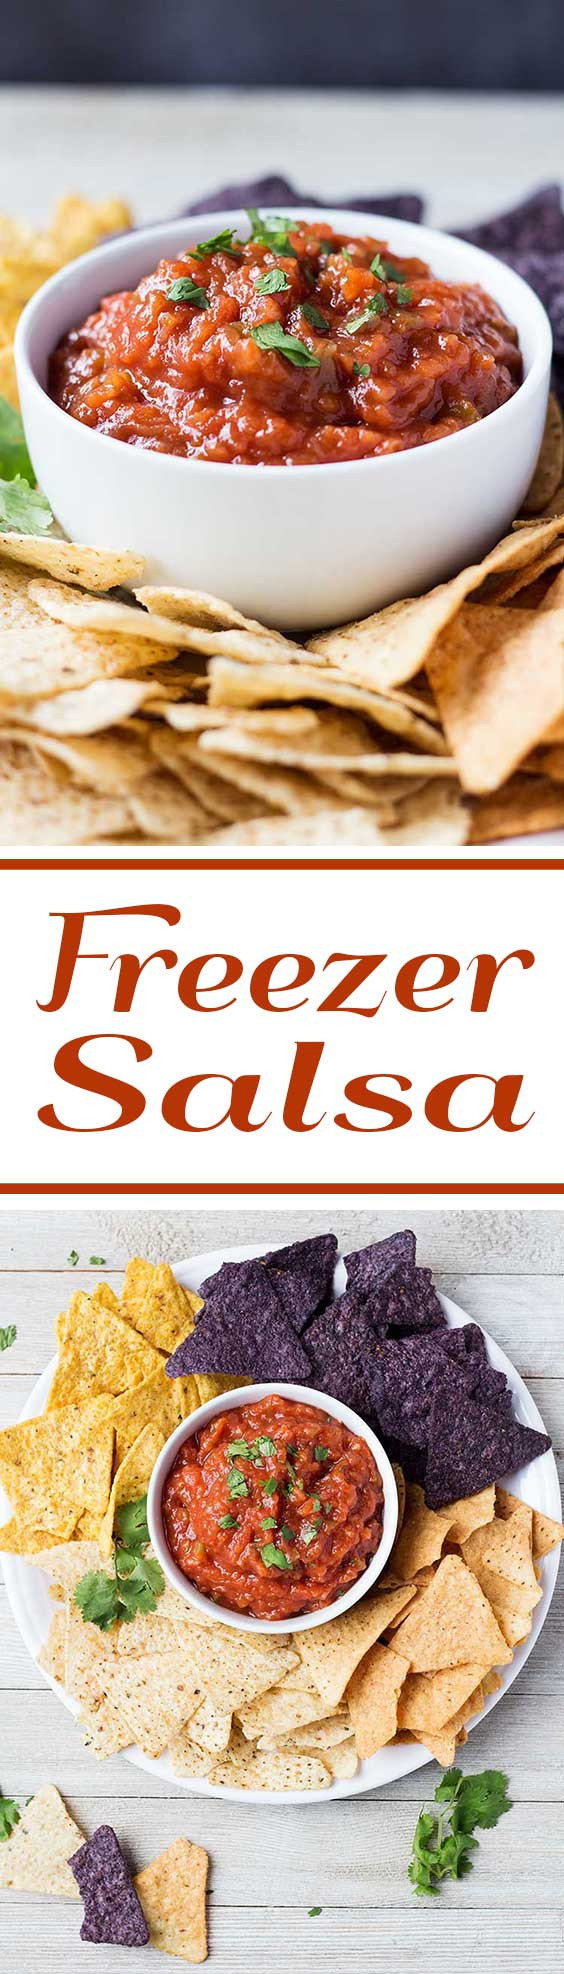 Freezer Salsa Recipe
 Freezer Salsa